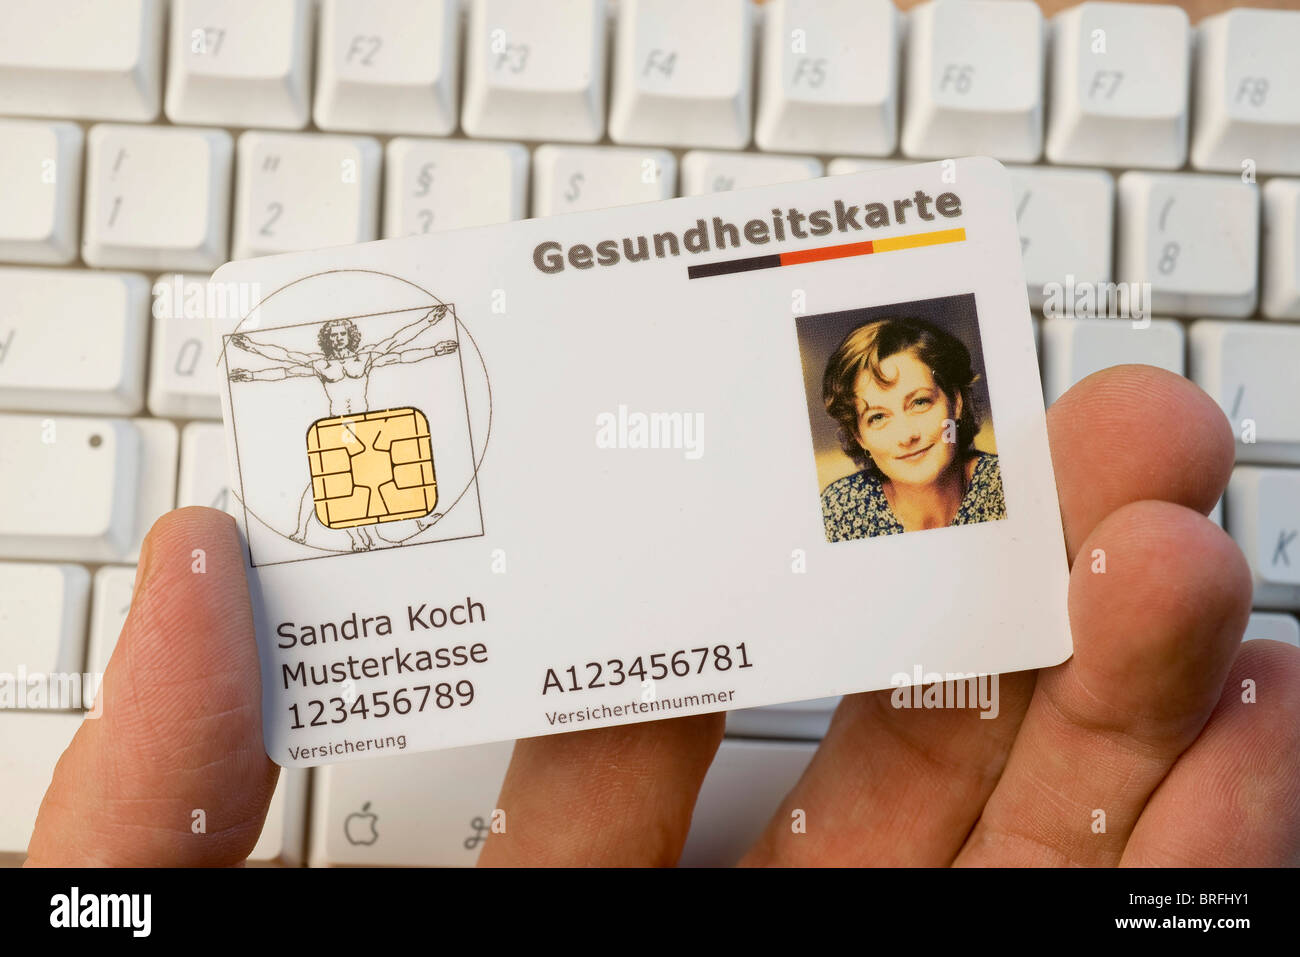 Deutsche elektronische Gesundheitskarte auf einer Tastatur Stockfoto